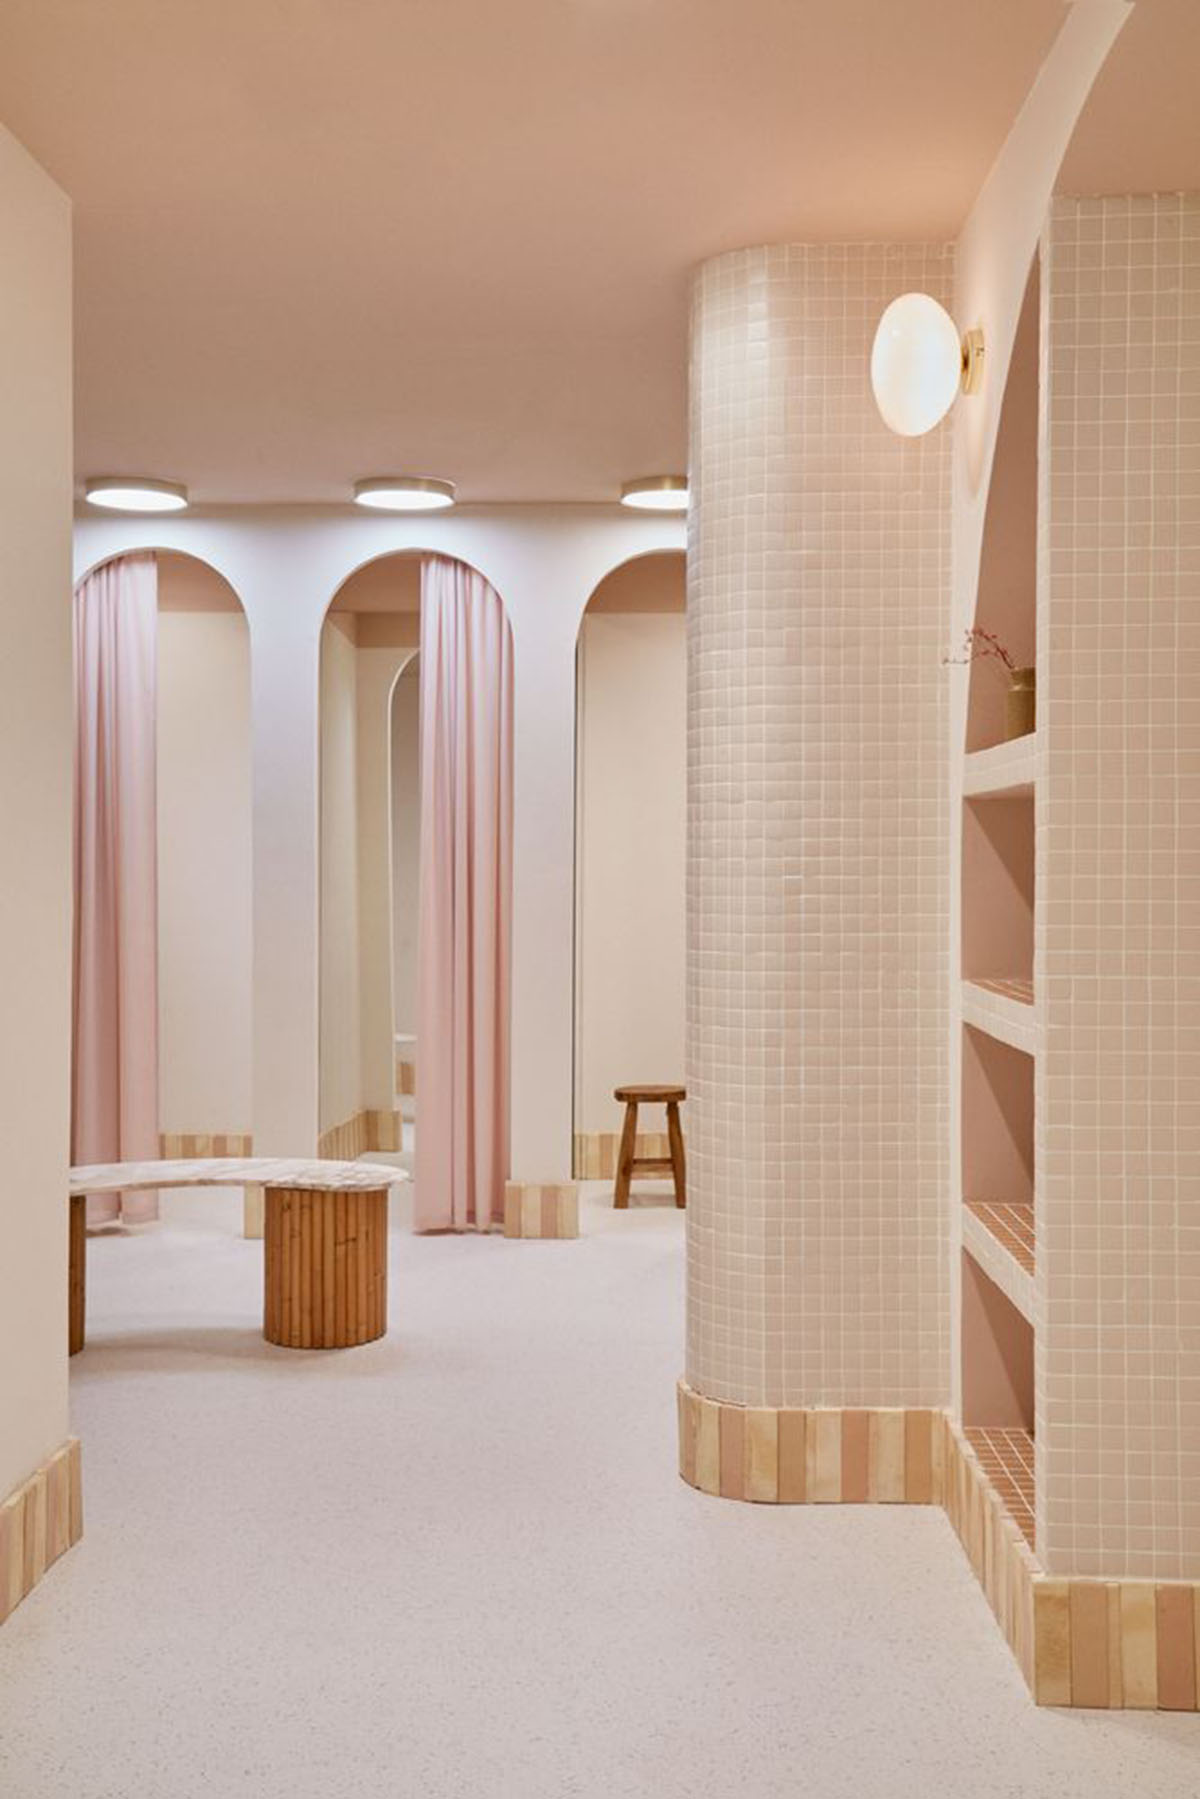 Студия Patricia Bustos создает светло-розовые интерьеры с арочными деталями для концептуального магазина в Мадриде. 